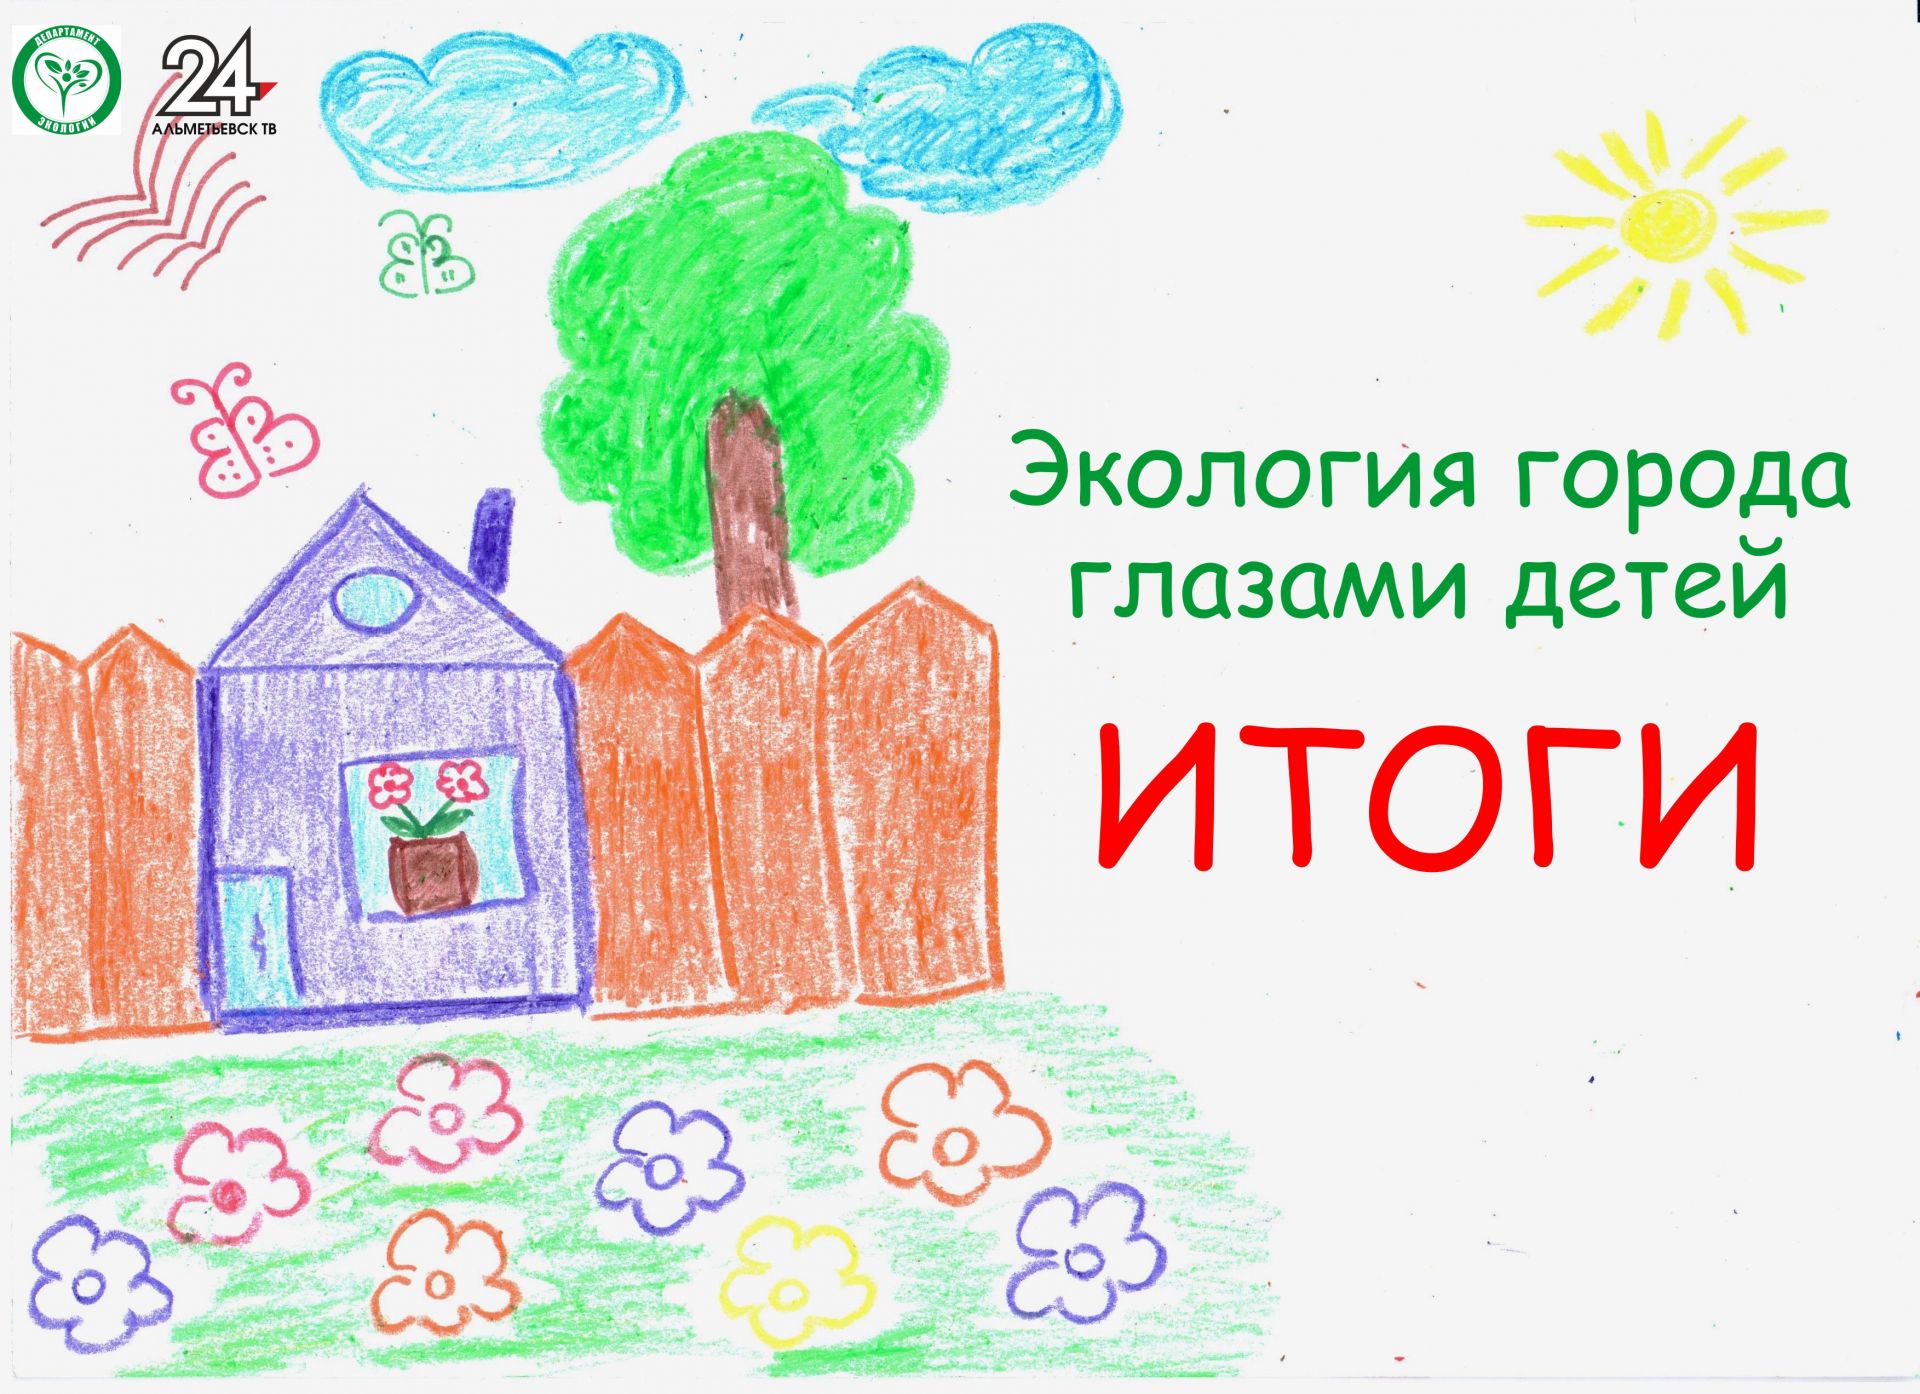 Телекомпания «Альметьевск ТВ» и Департамент экологии подвели итоги конкурса рисунков